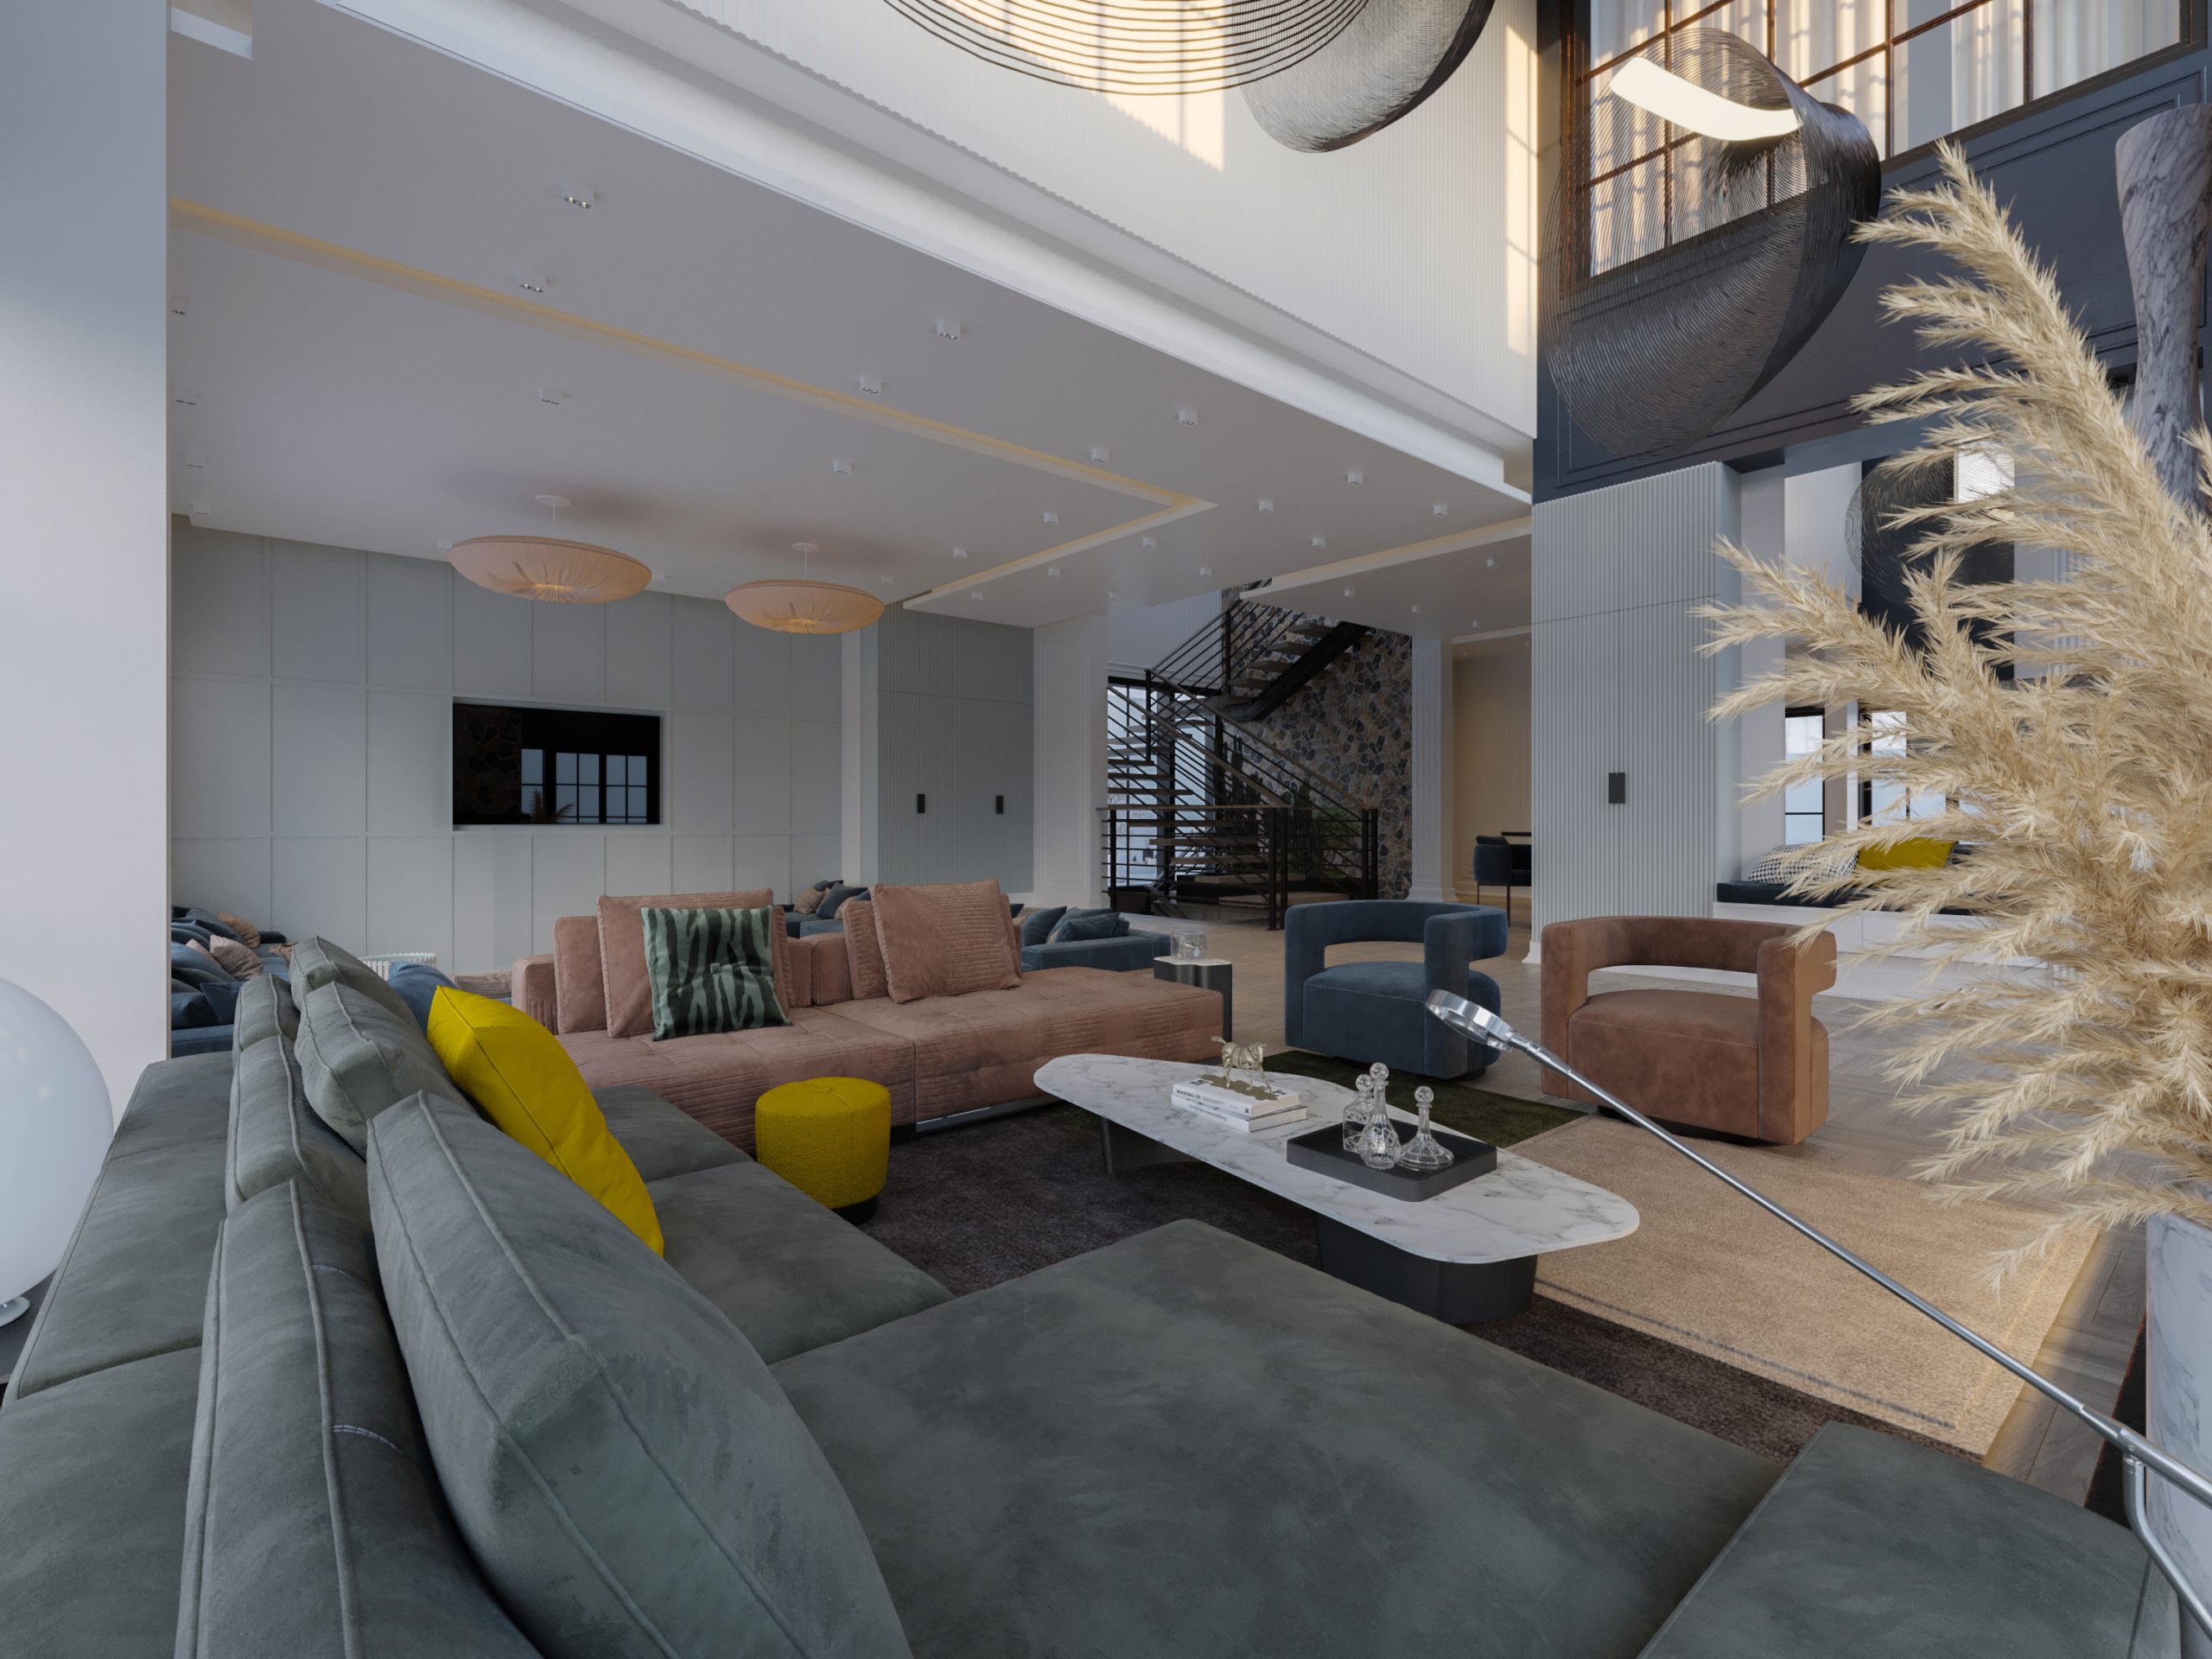 STONE LIVING ROOM DESIGN- sofa design - tv - unite - villa - stairs